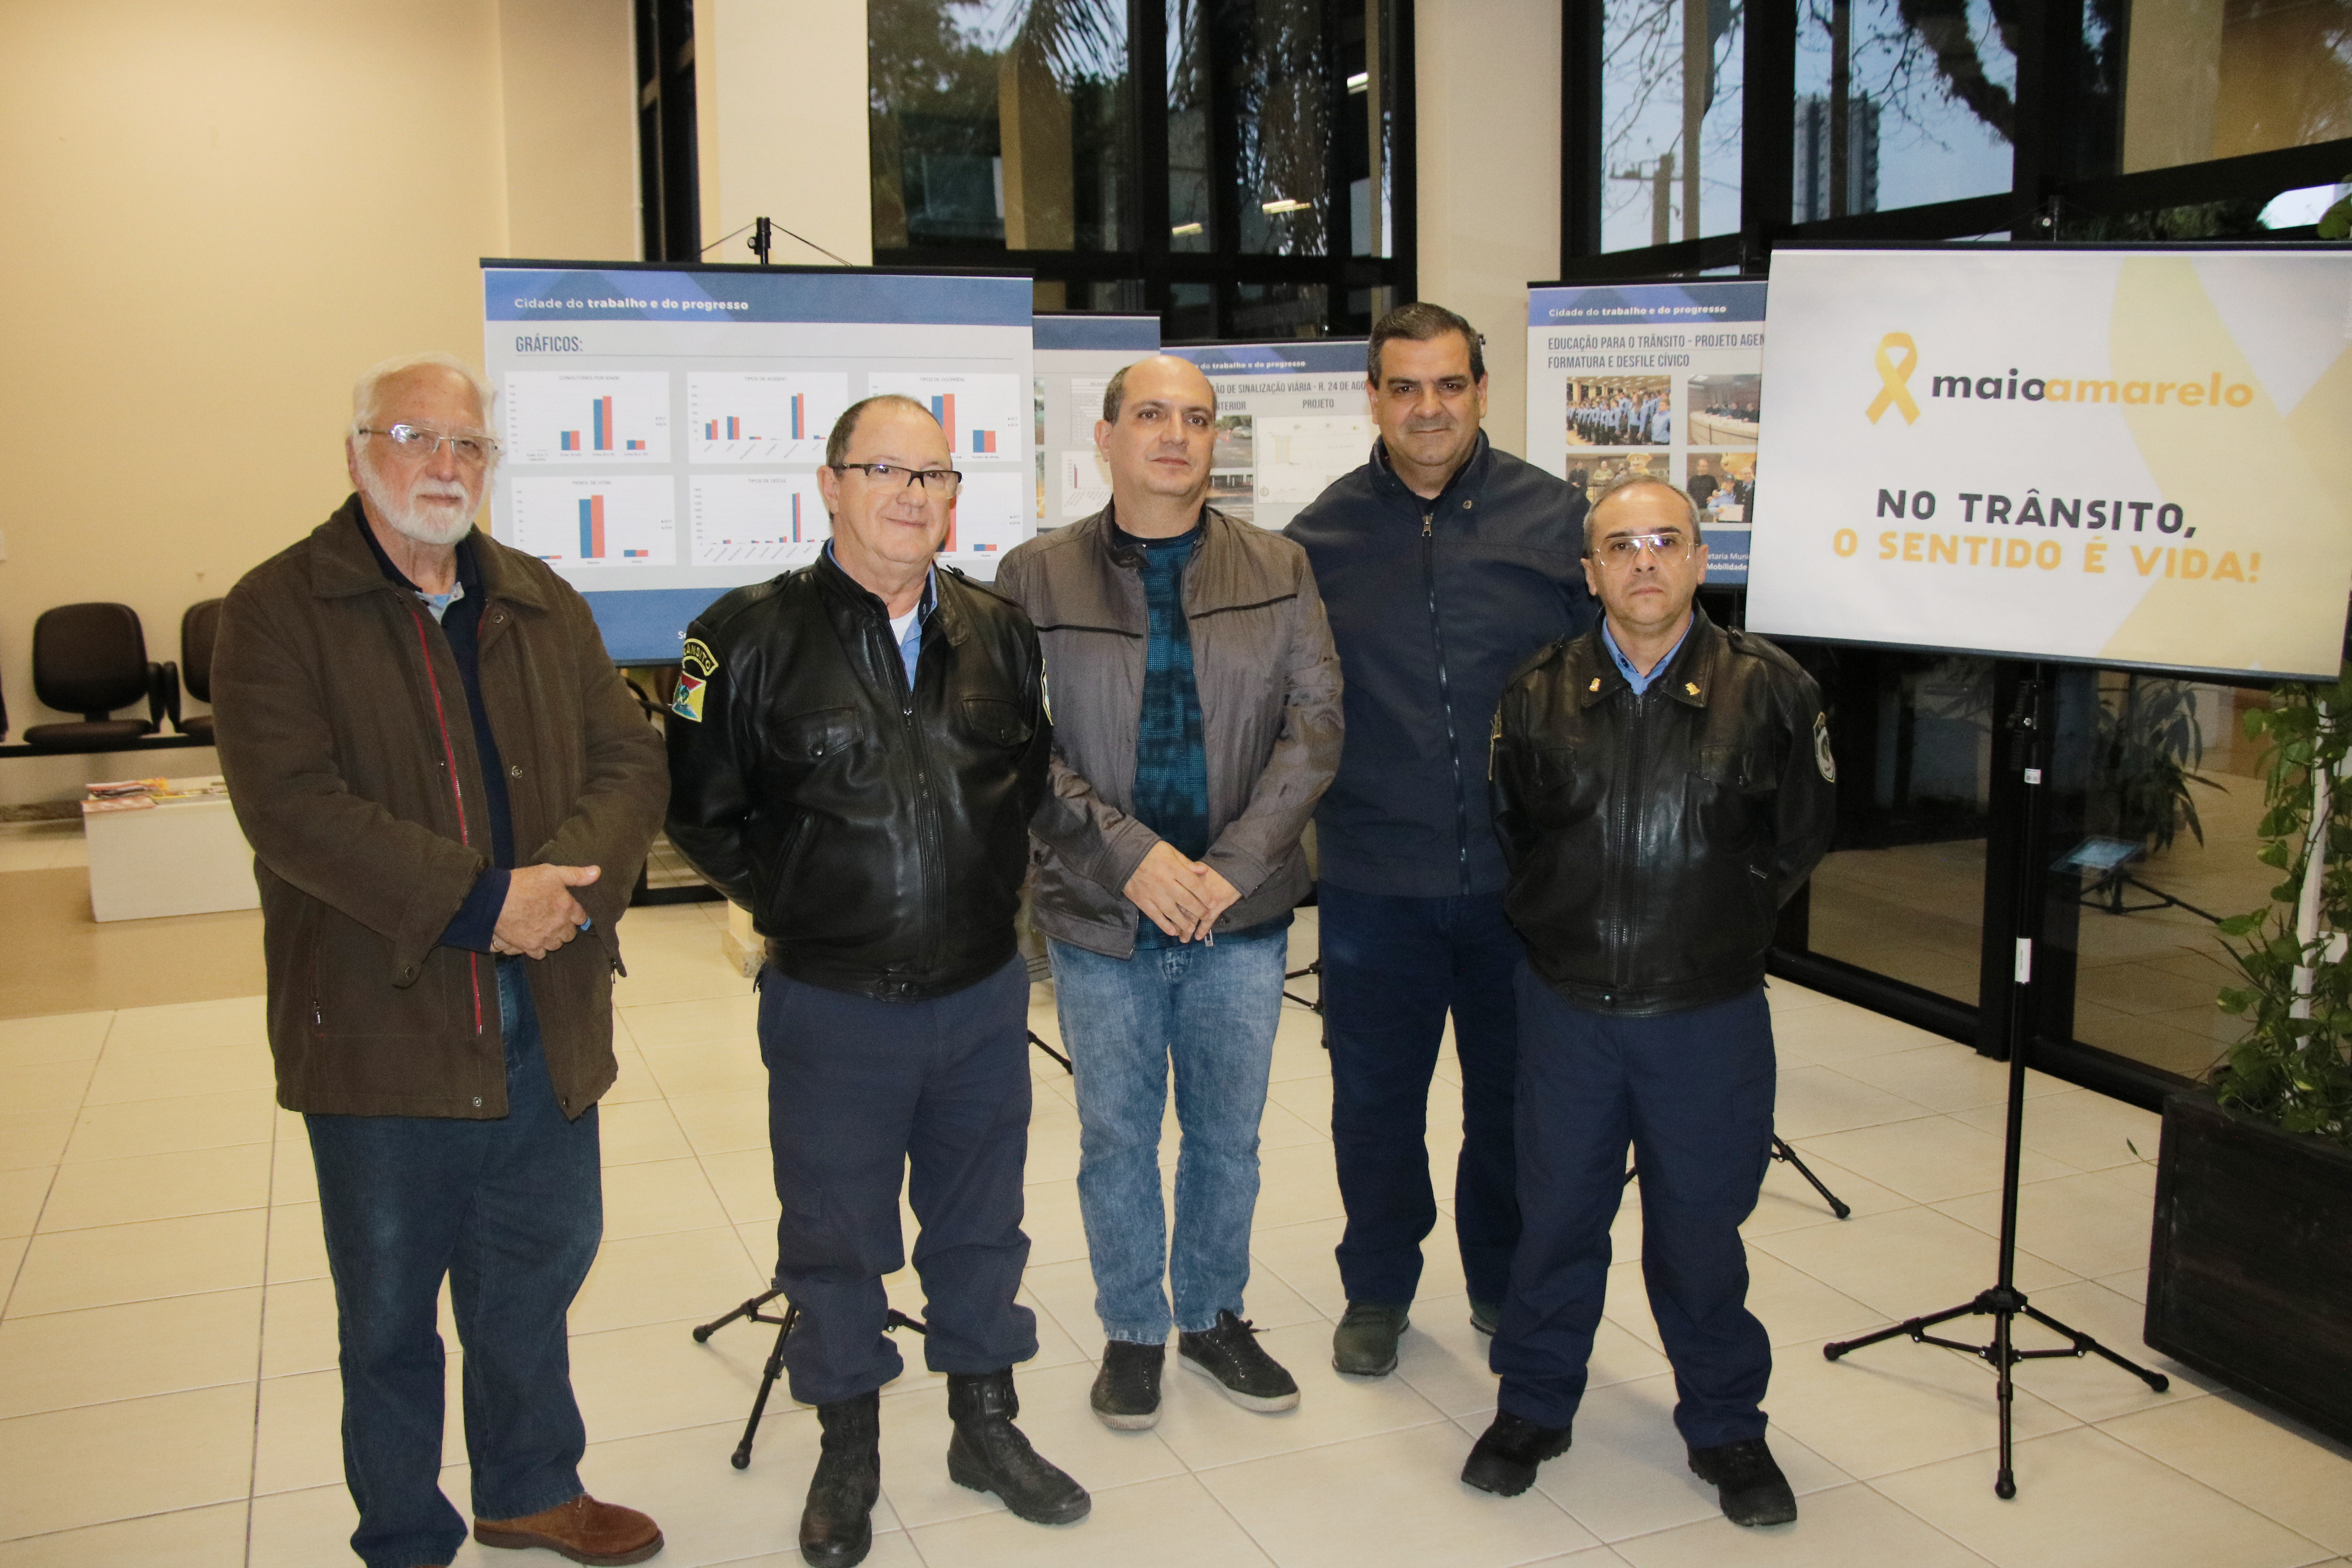 Maio Amarelo: Exposição traz informações sobre funcionamento do setor de Trânsito